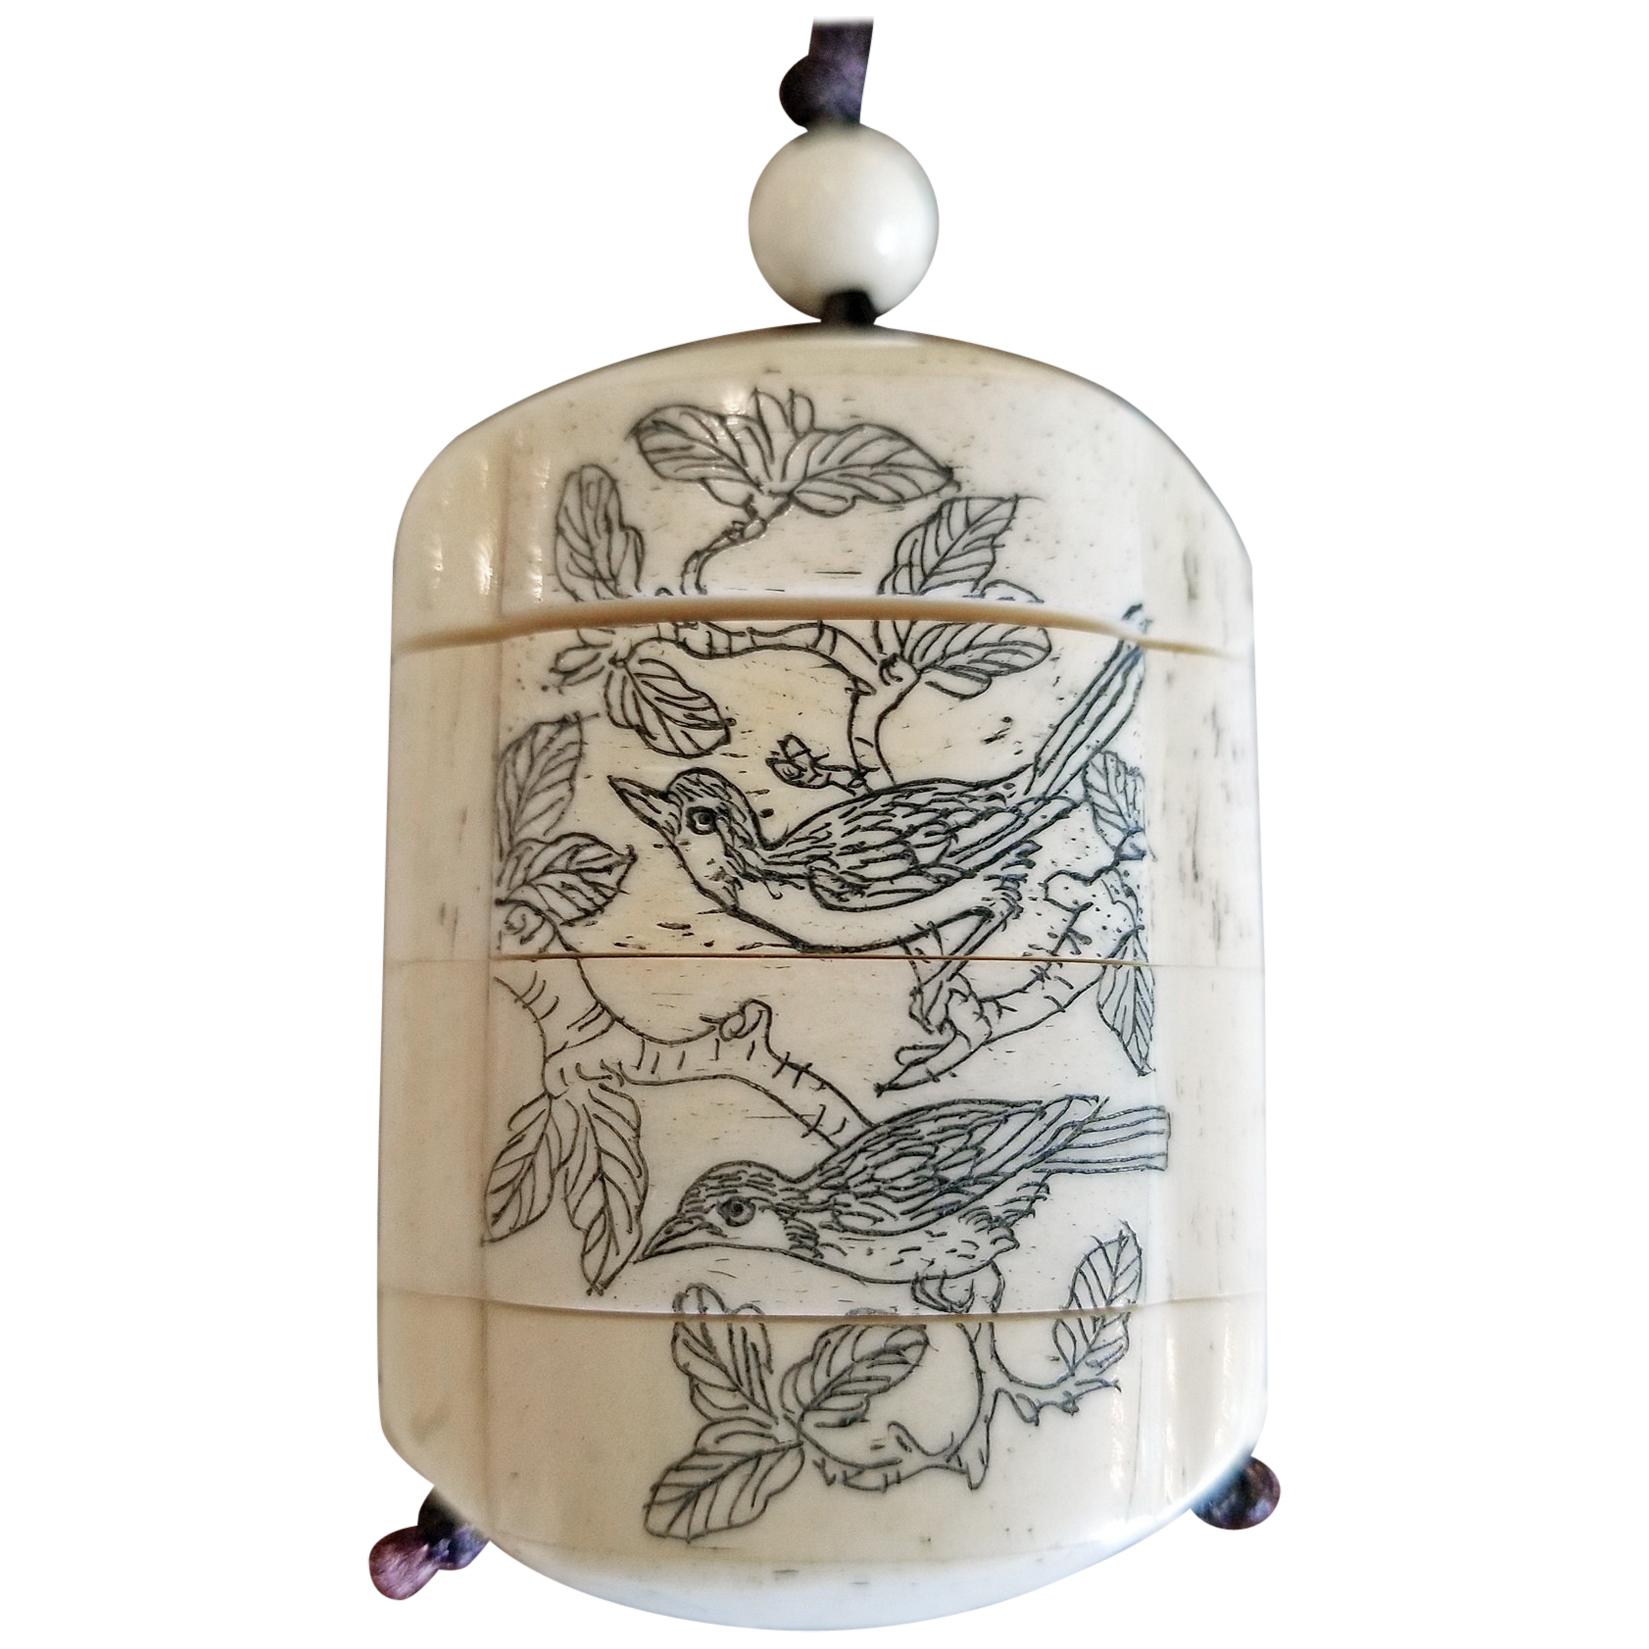 japanisches Knocheninro des 19. Jahrhunderts mit Vögeln und erotischen Szenen:: signiert